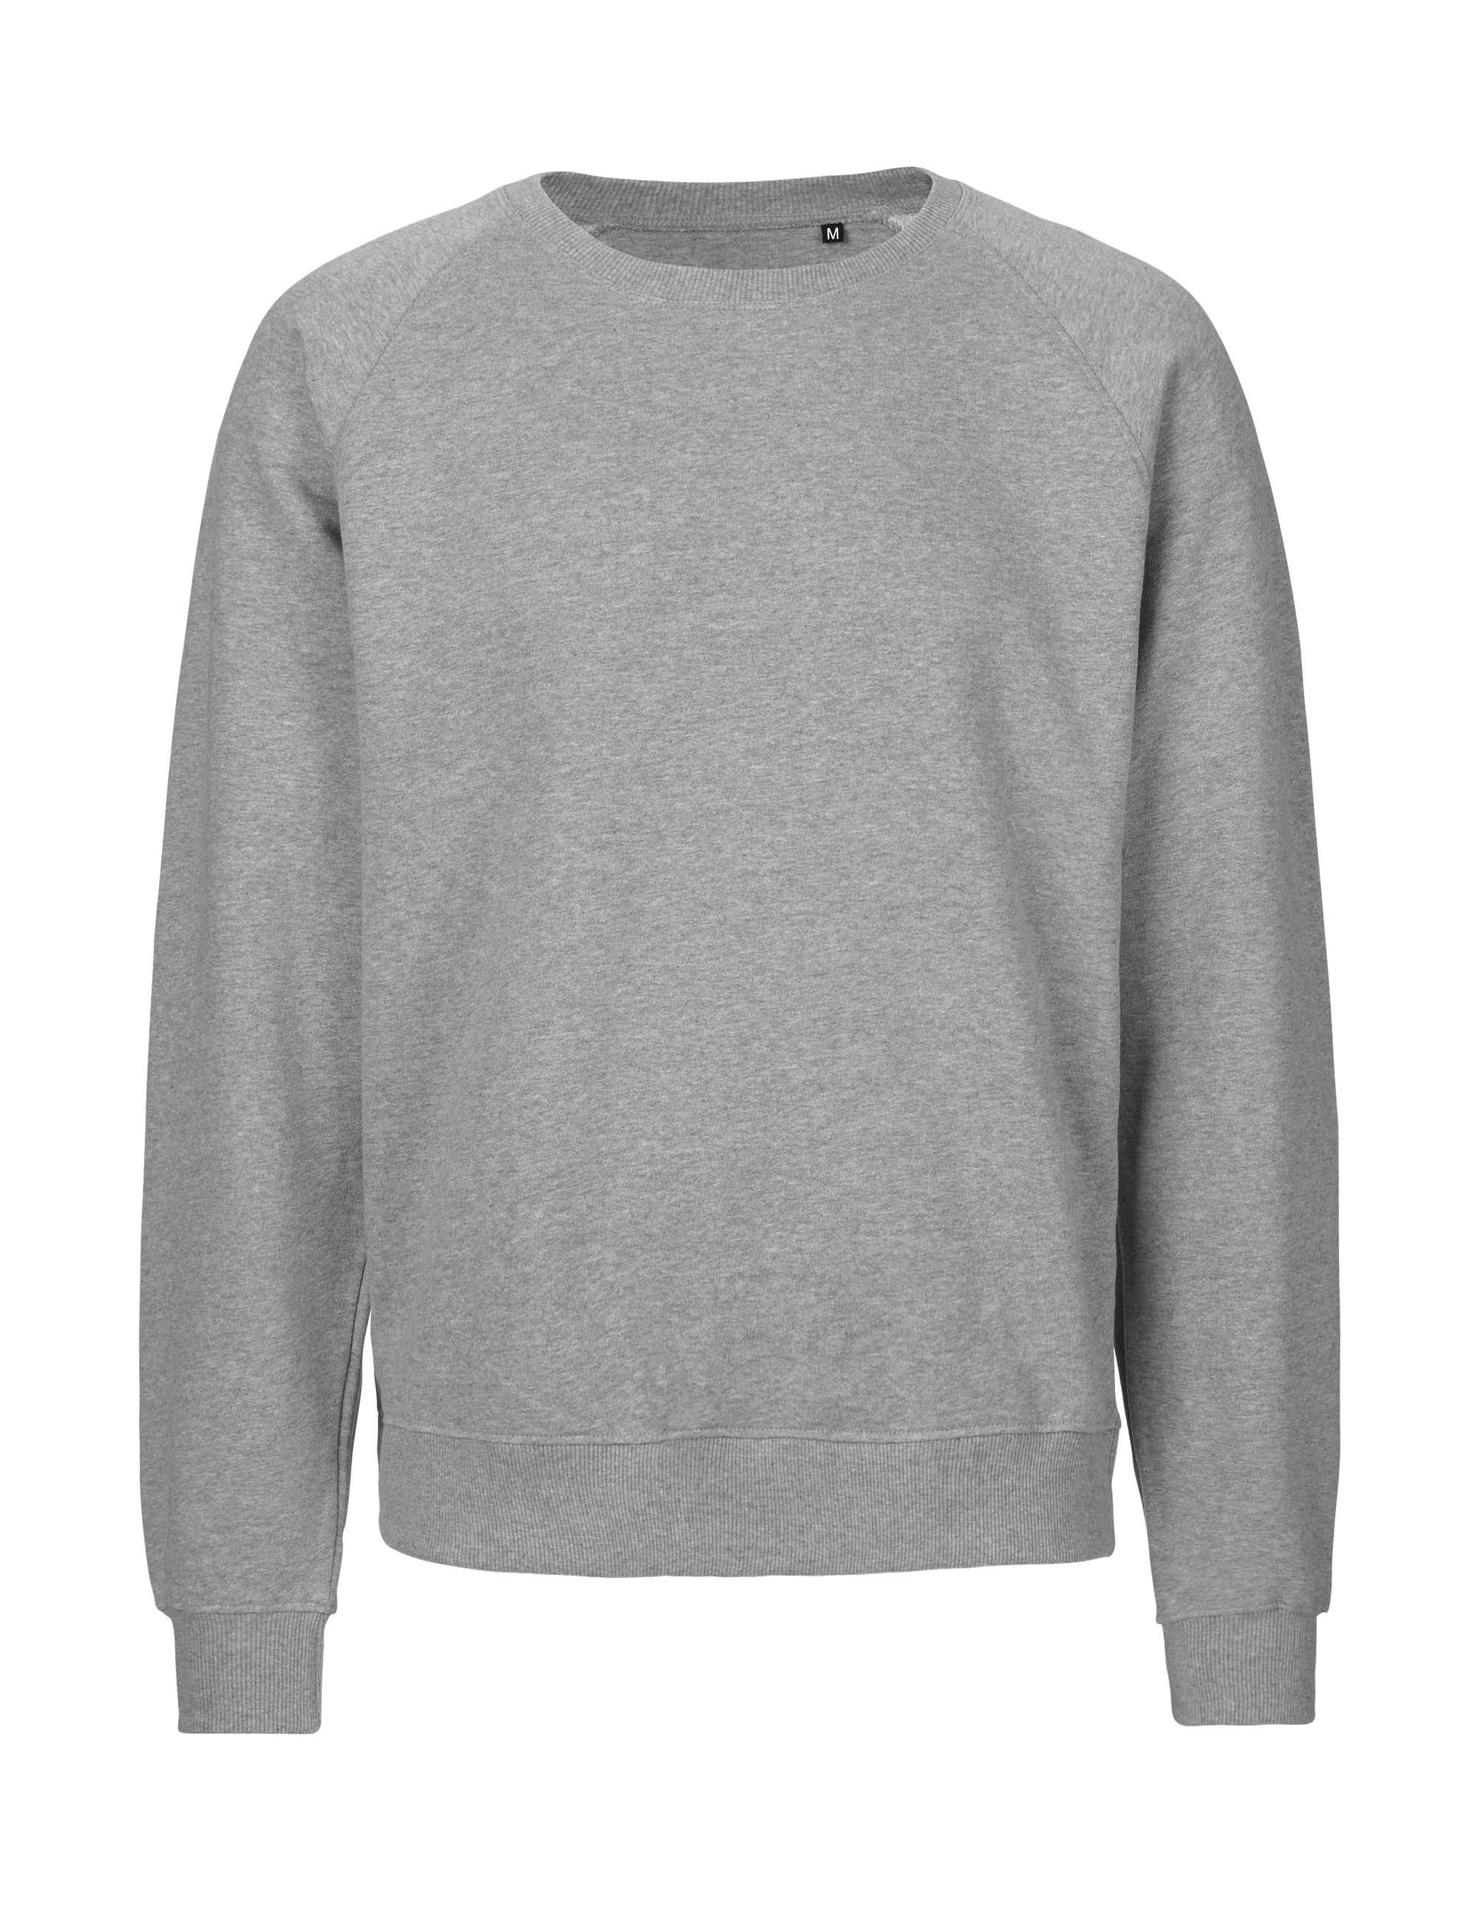 [PR/06029] Unisex Tiger Cotton Sweatshirt (Sport Grey 21, L)